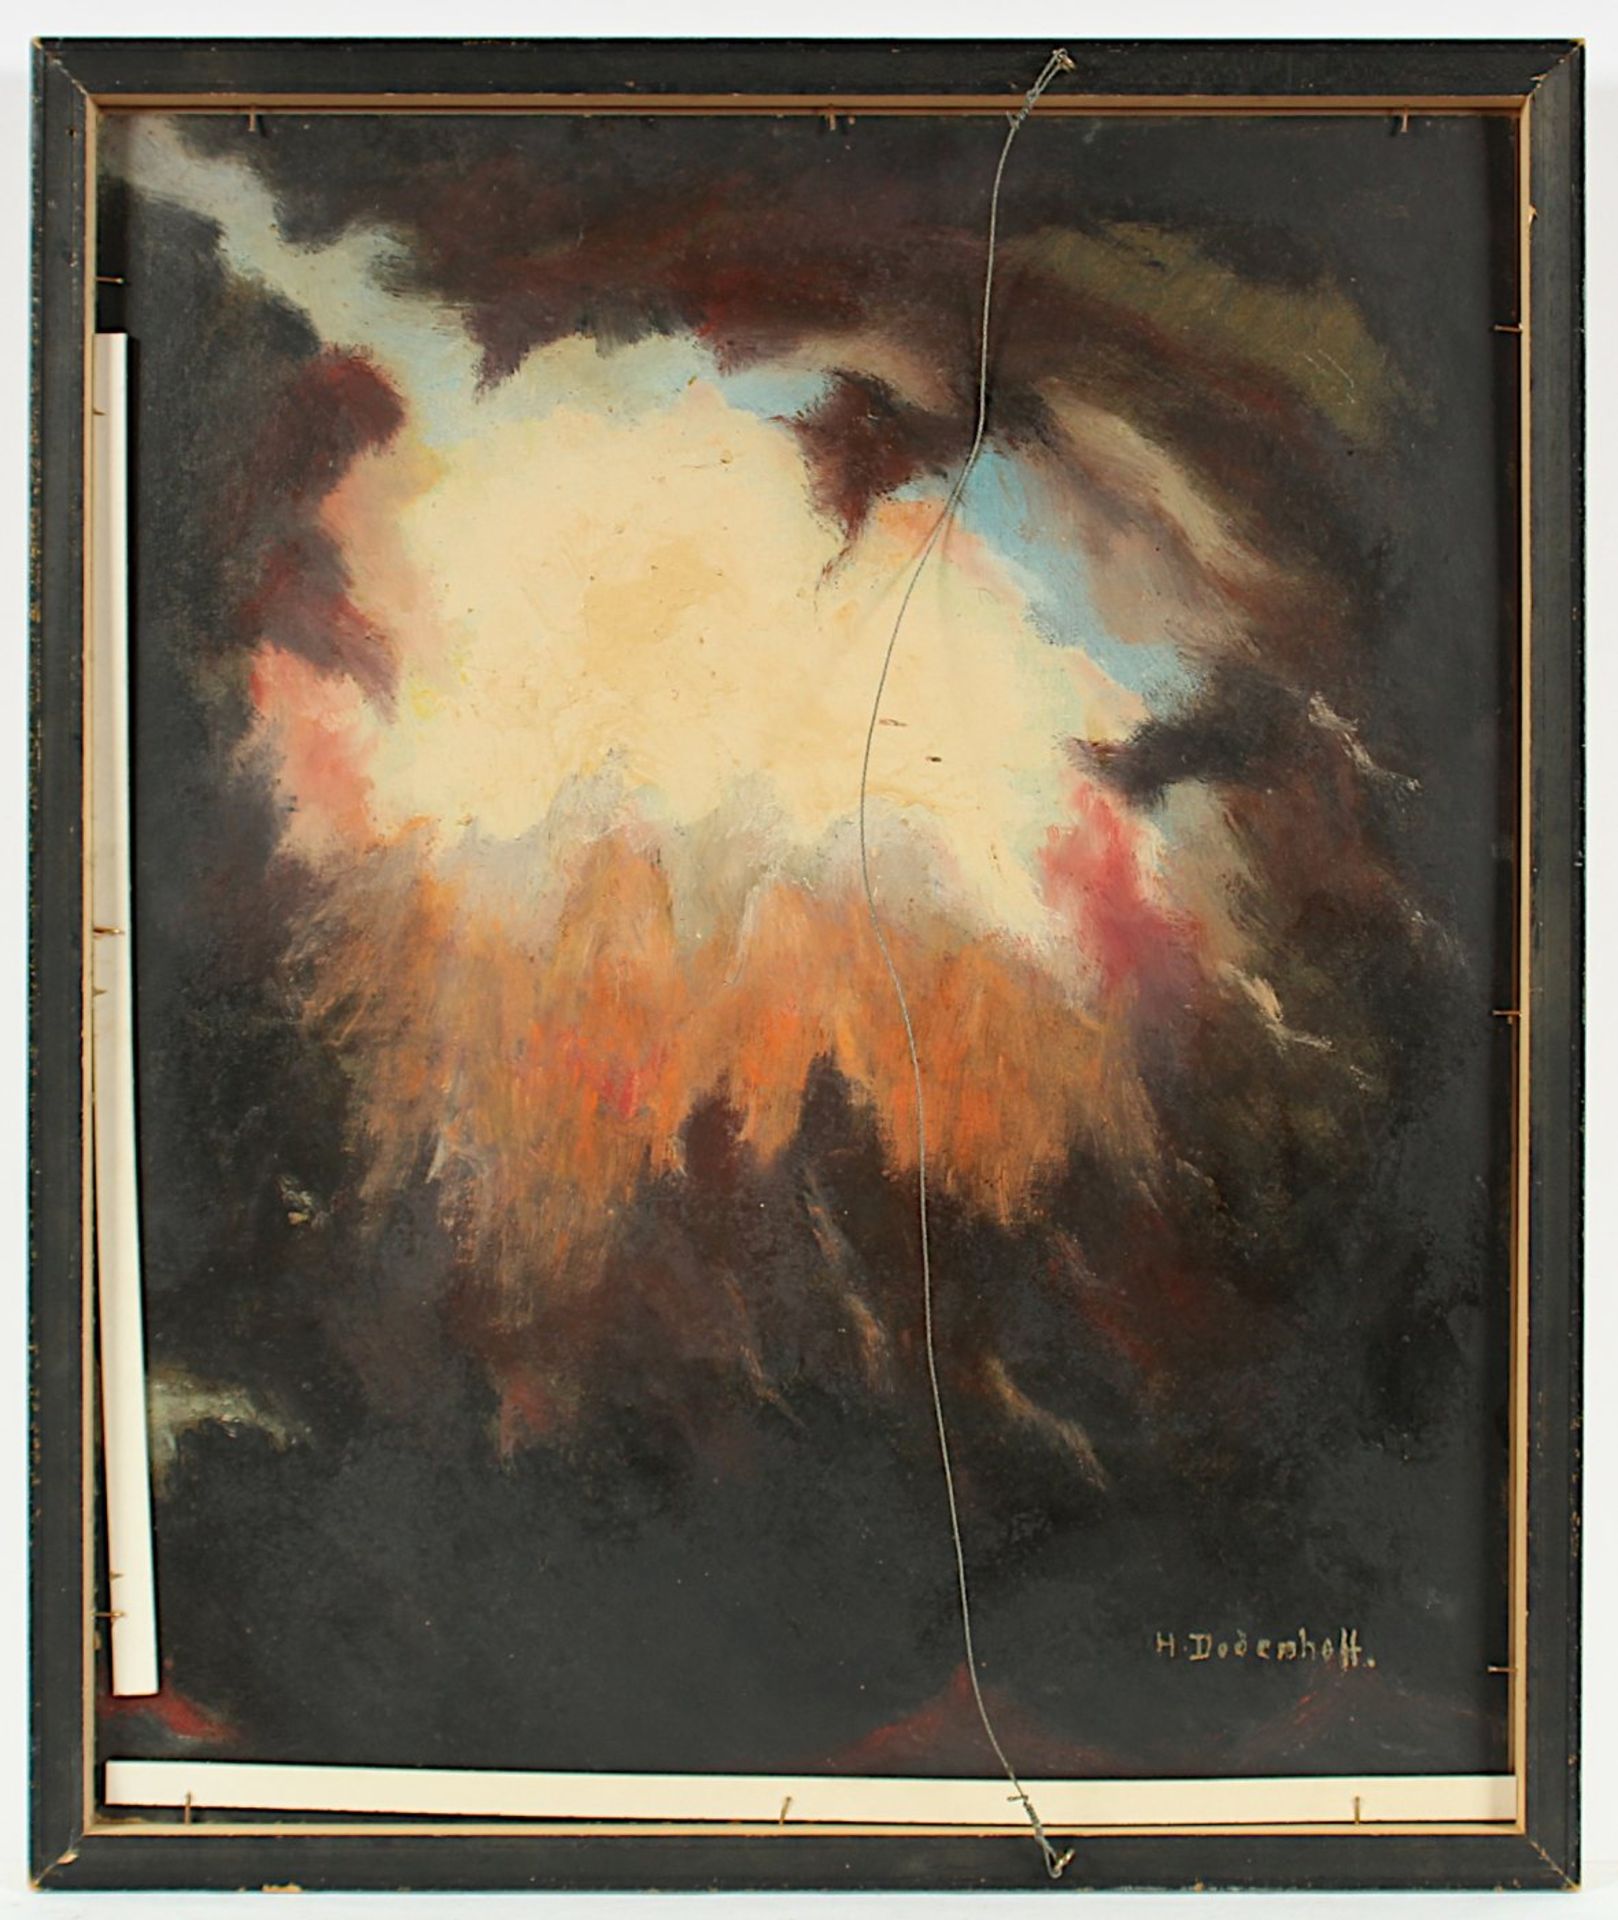 DODENHOFF, Heinz (1889-1981), "Abstrakte Landschaft", Öl/Malkarton, 60 x 50, verso signiert sowie - Bild 2 aus 2